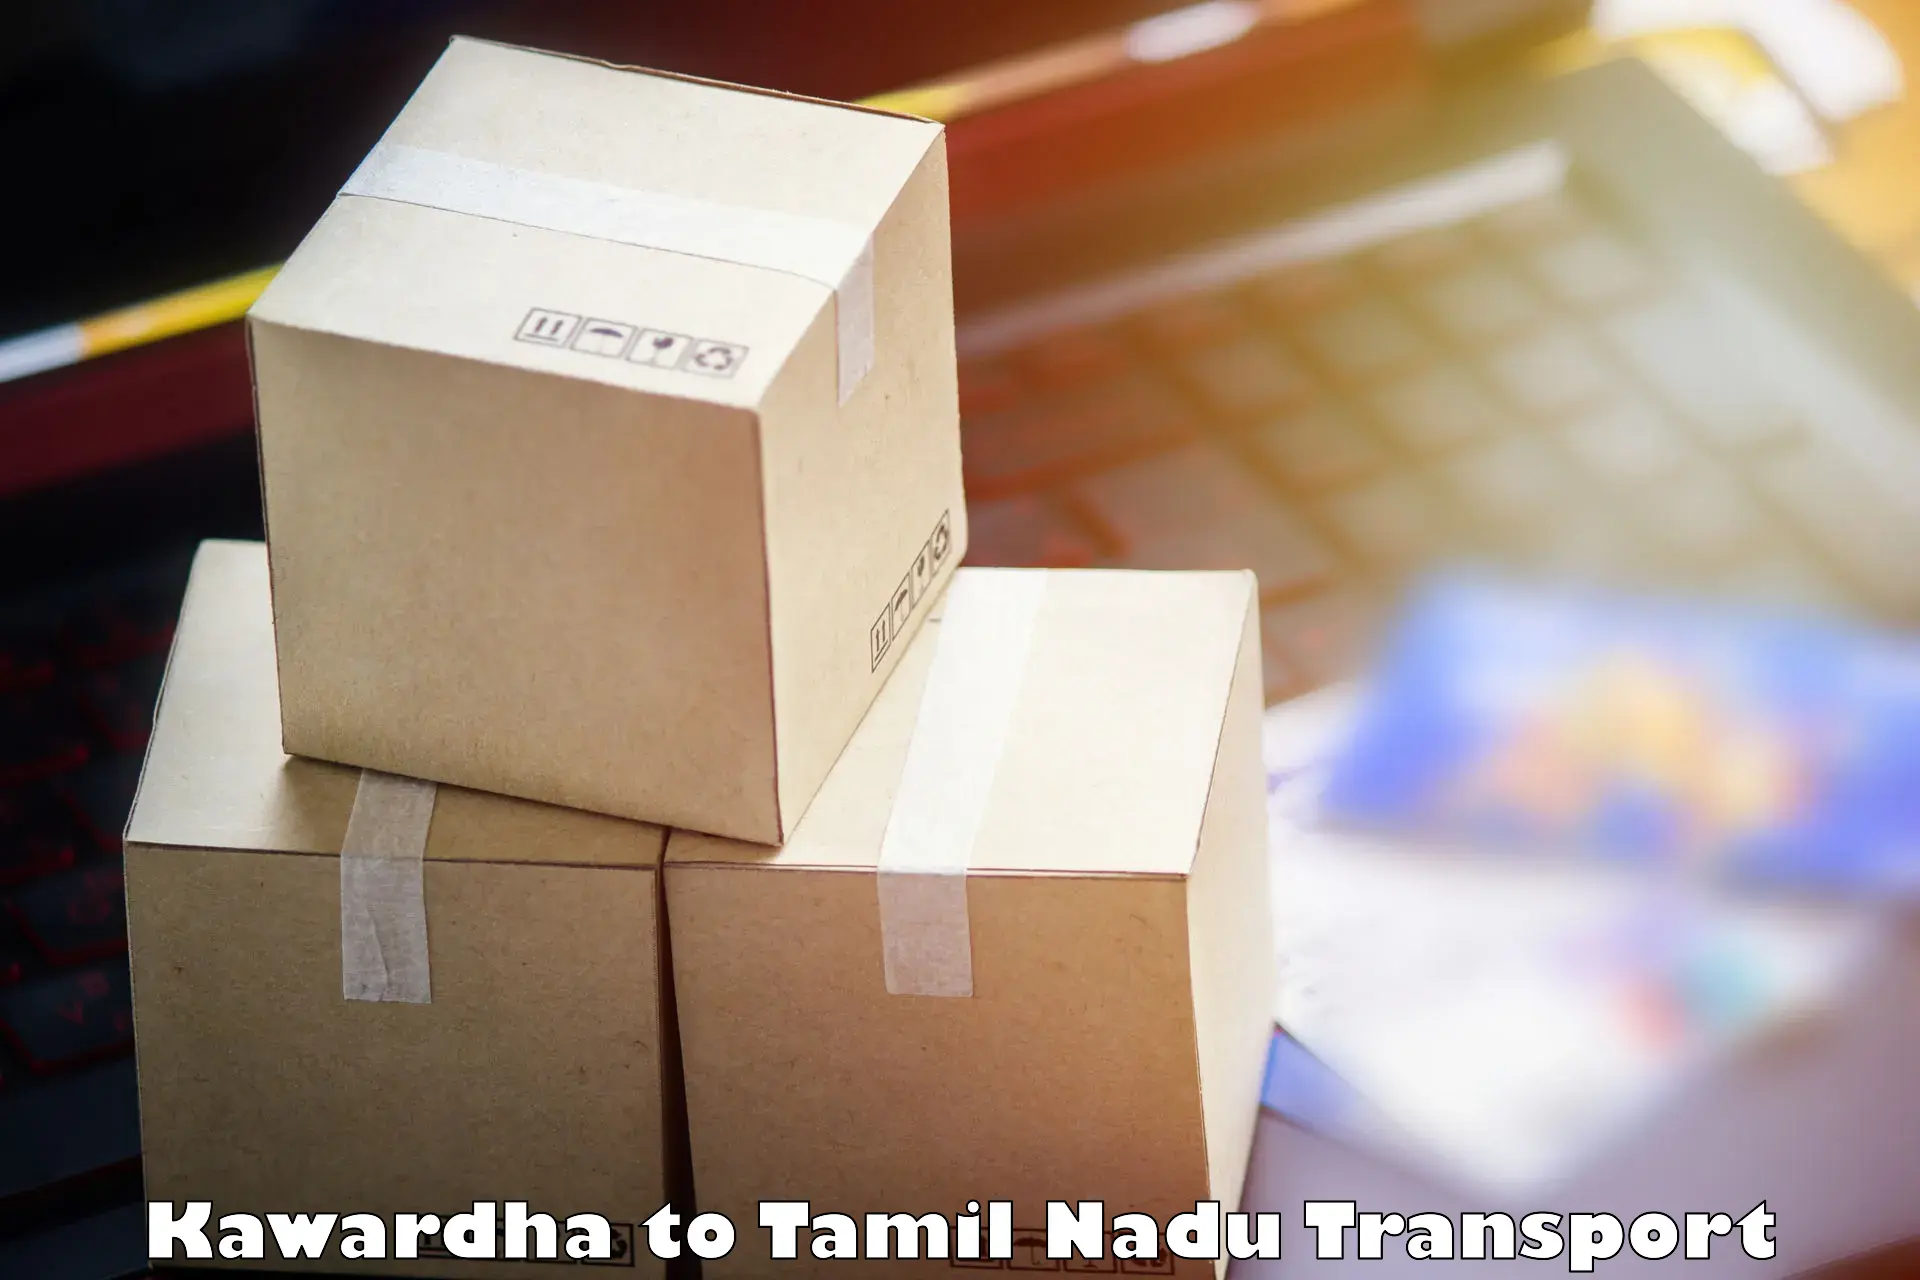 Delivery service Kawardha to Tiruchirappalli